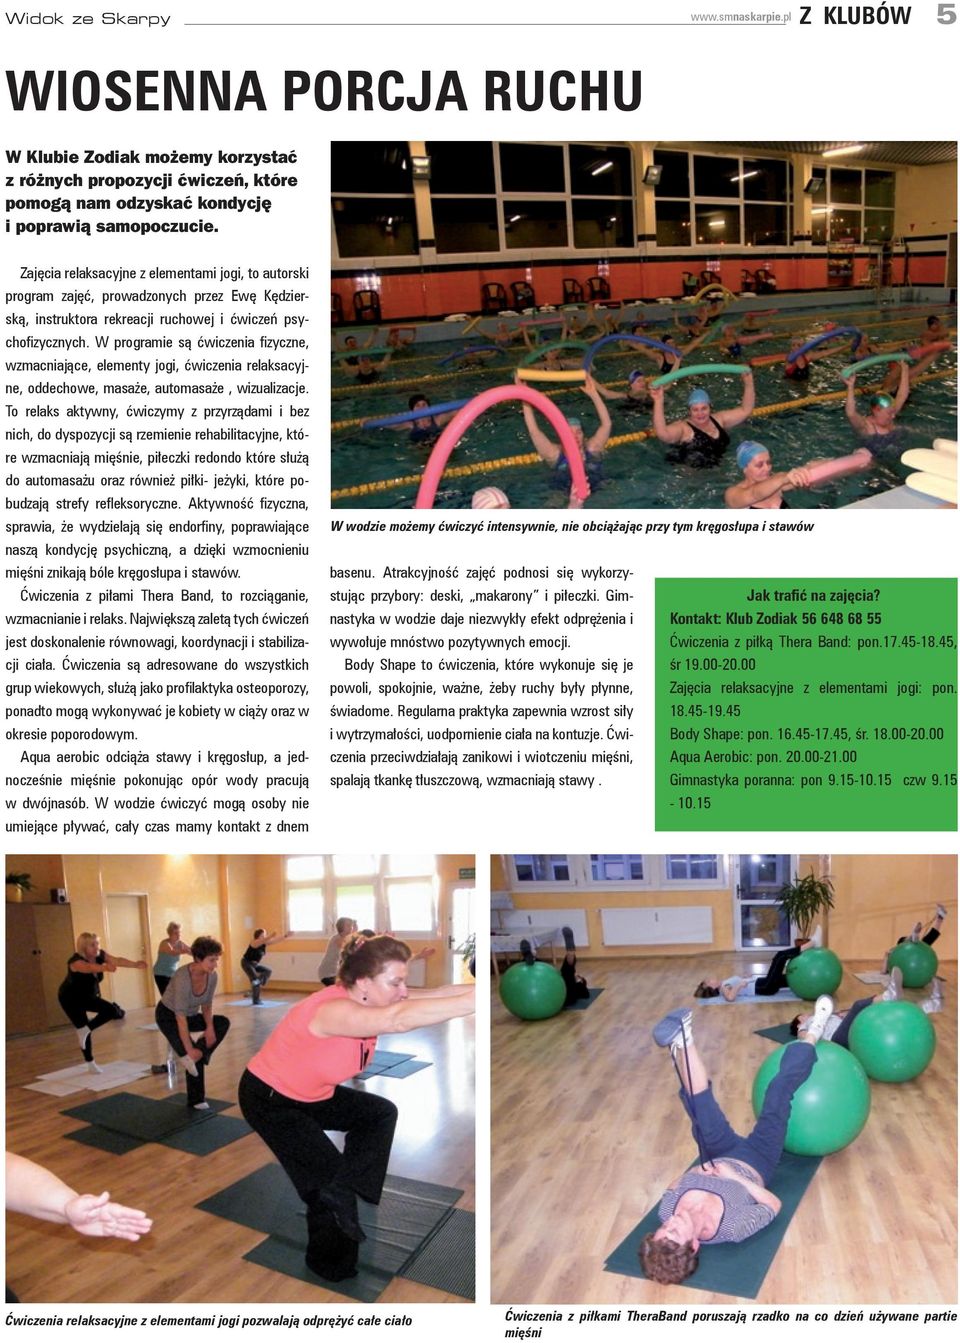 W programie są ćwiczenia fizyczne, wzmacniające, elementy jogi, ćwiczenia relaksacyjne, oddechowe, masaże, automasaże, wizualizacje.